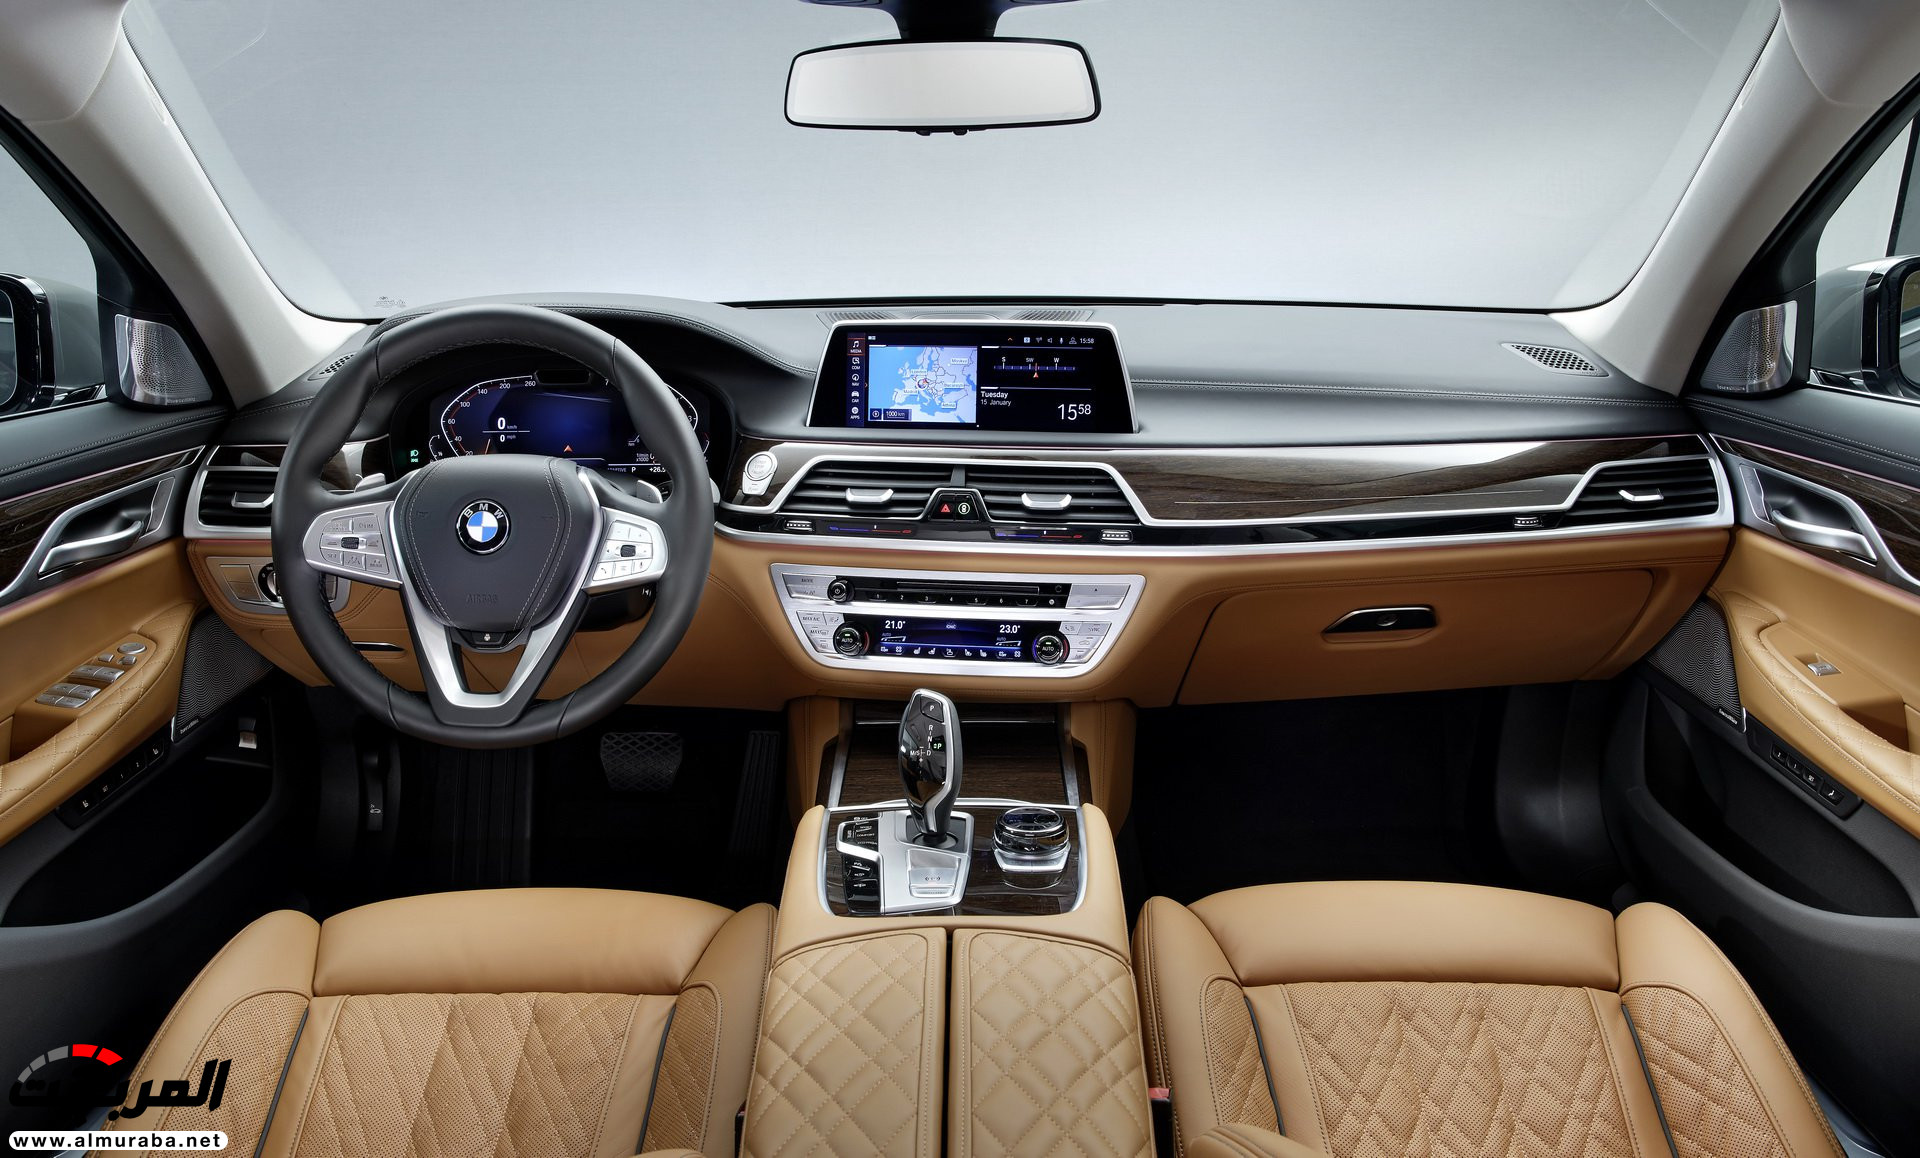 بي ام دبليو الفئة السابعة 2020 المحدثة تكشف نفسها رسمياً "صور ومواصفات" BMW 7 Series 248